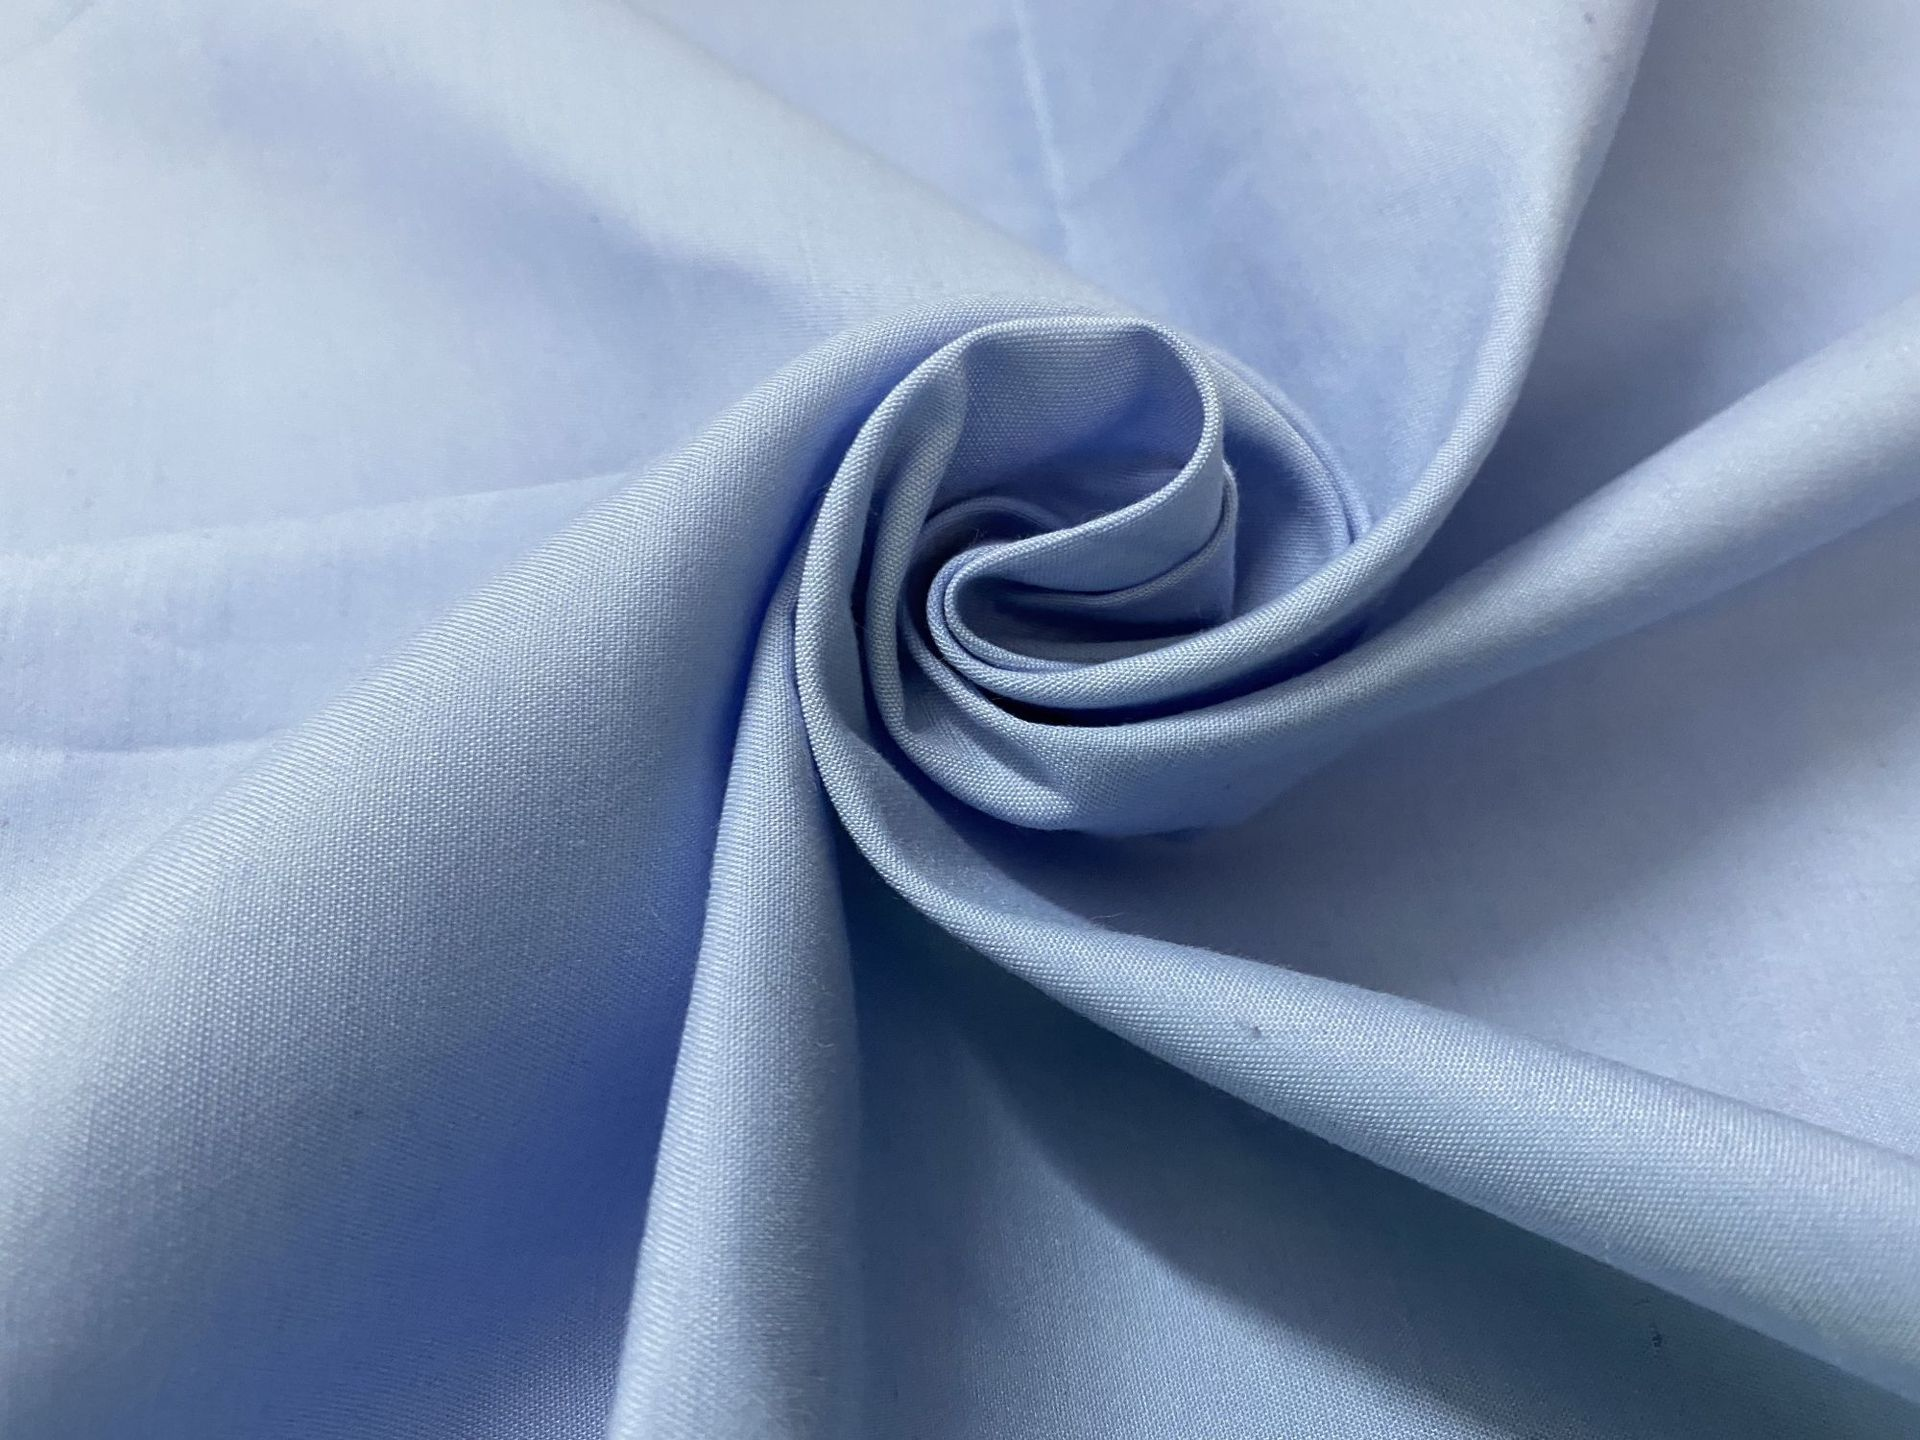 梳理棉织物清洁和维护技能